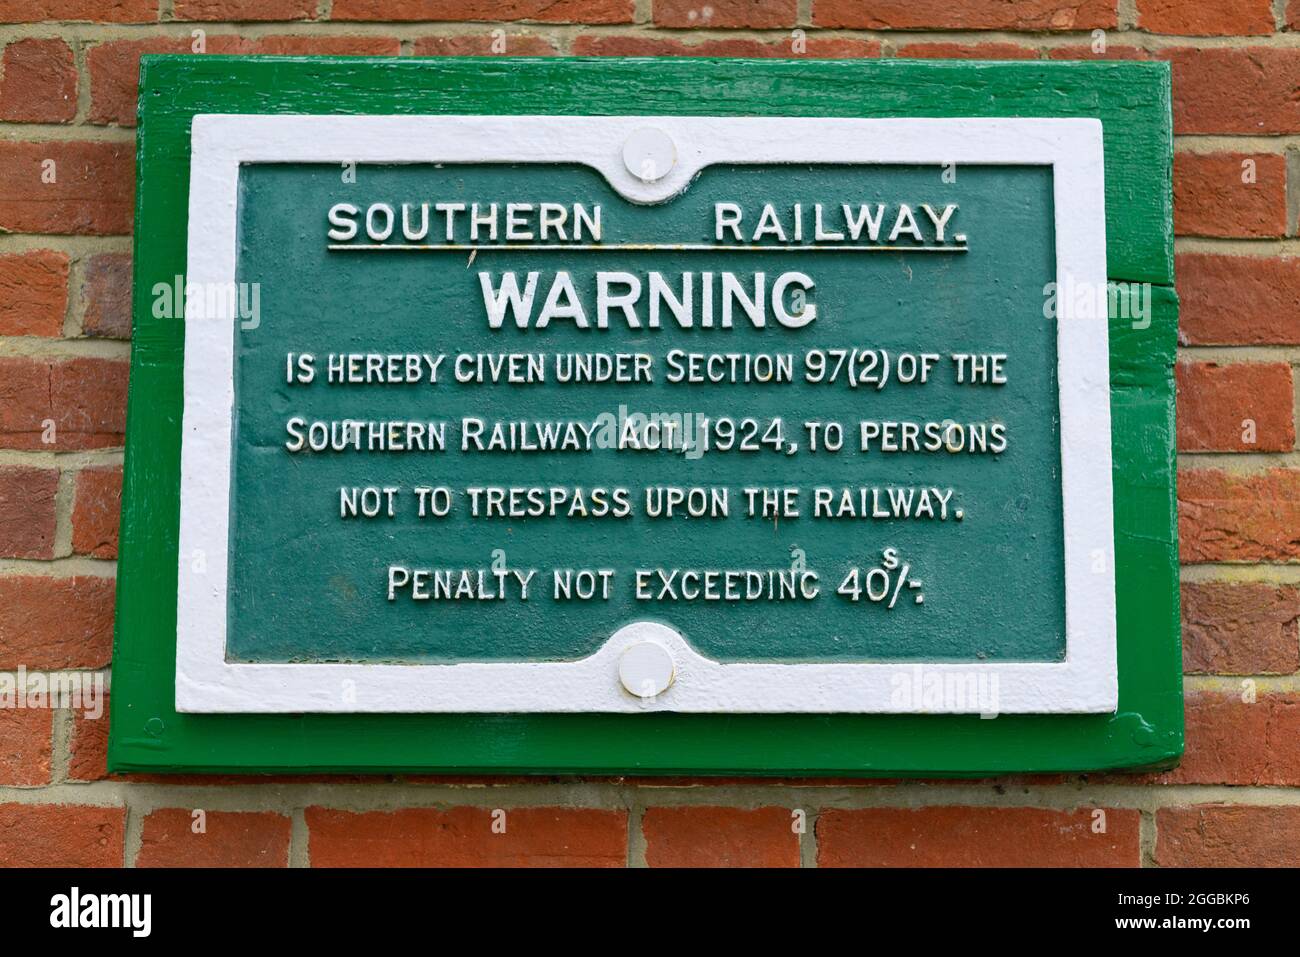 Der Bahnhof Breamore, Hampshire, Großbritannien, wurde 1964 nach dem Beeching Report geschlossen. Warnhinweis zur Übertretung der Südbahn 1924. Stockfoto